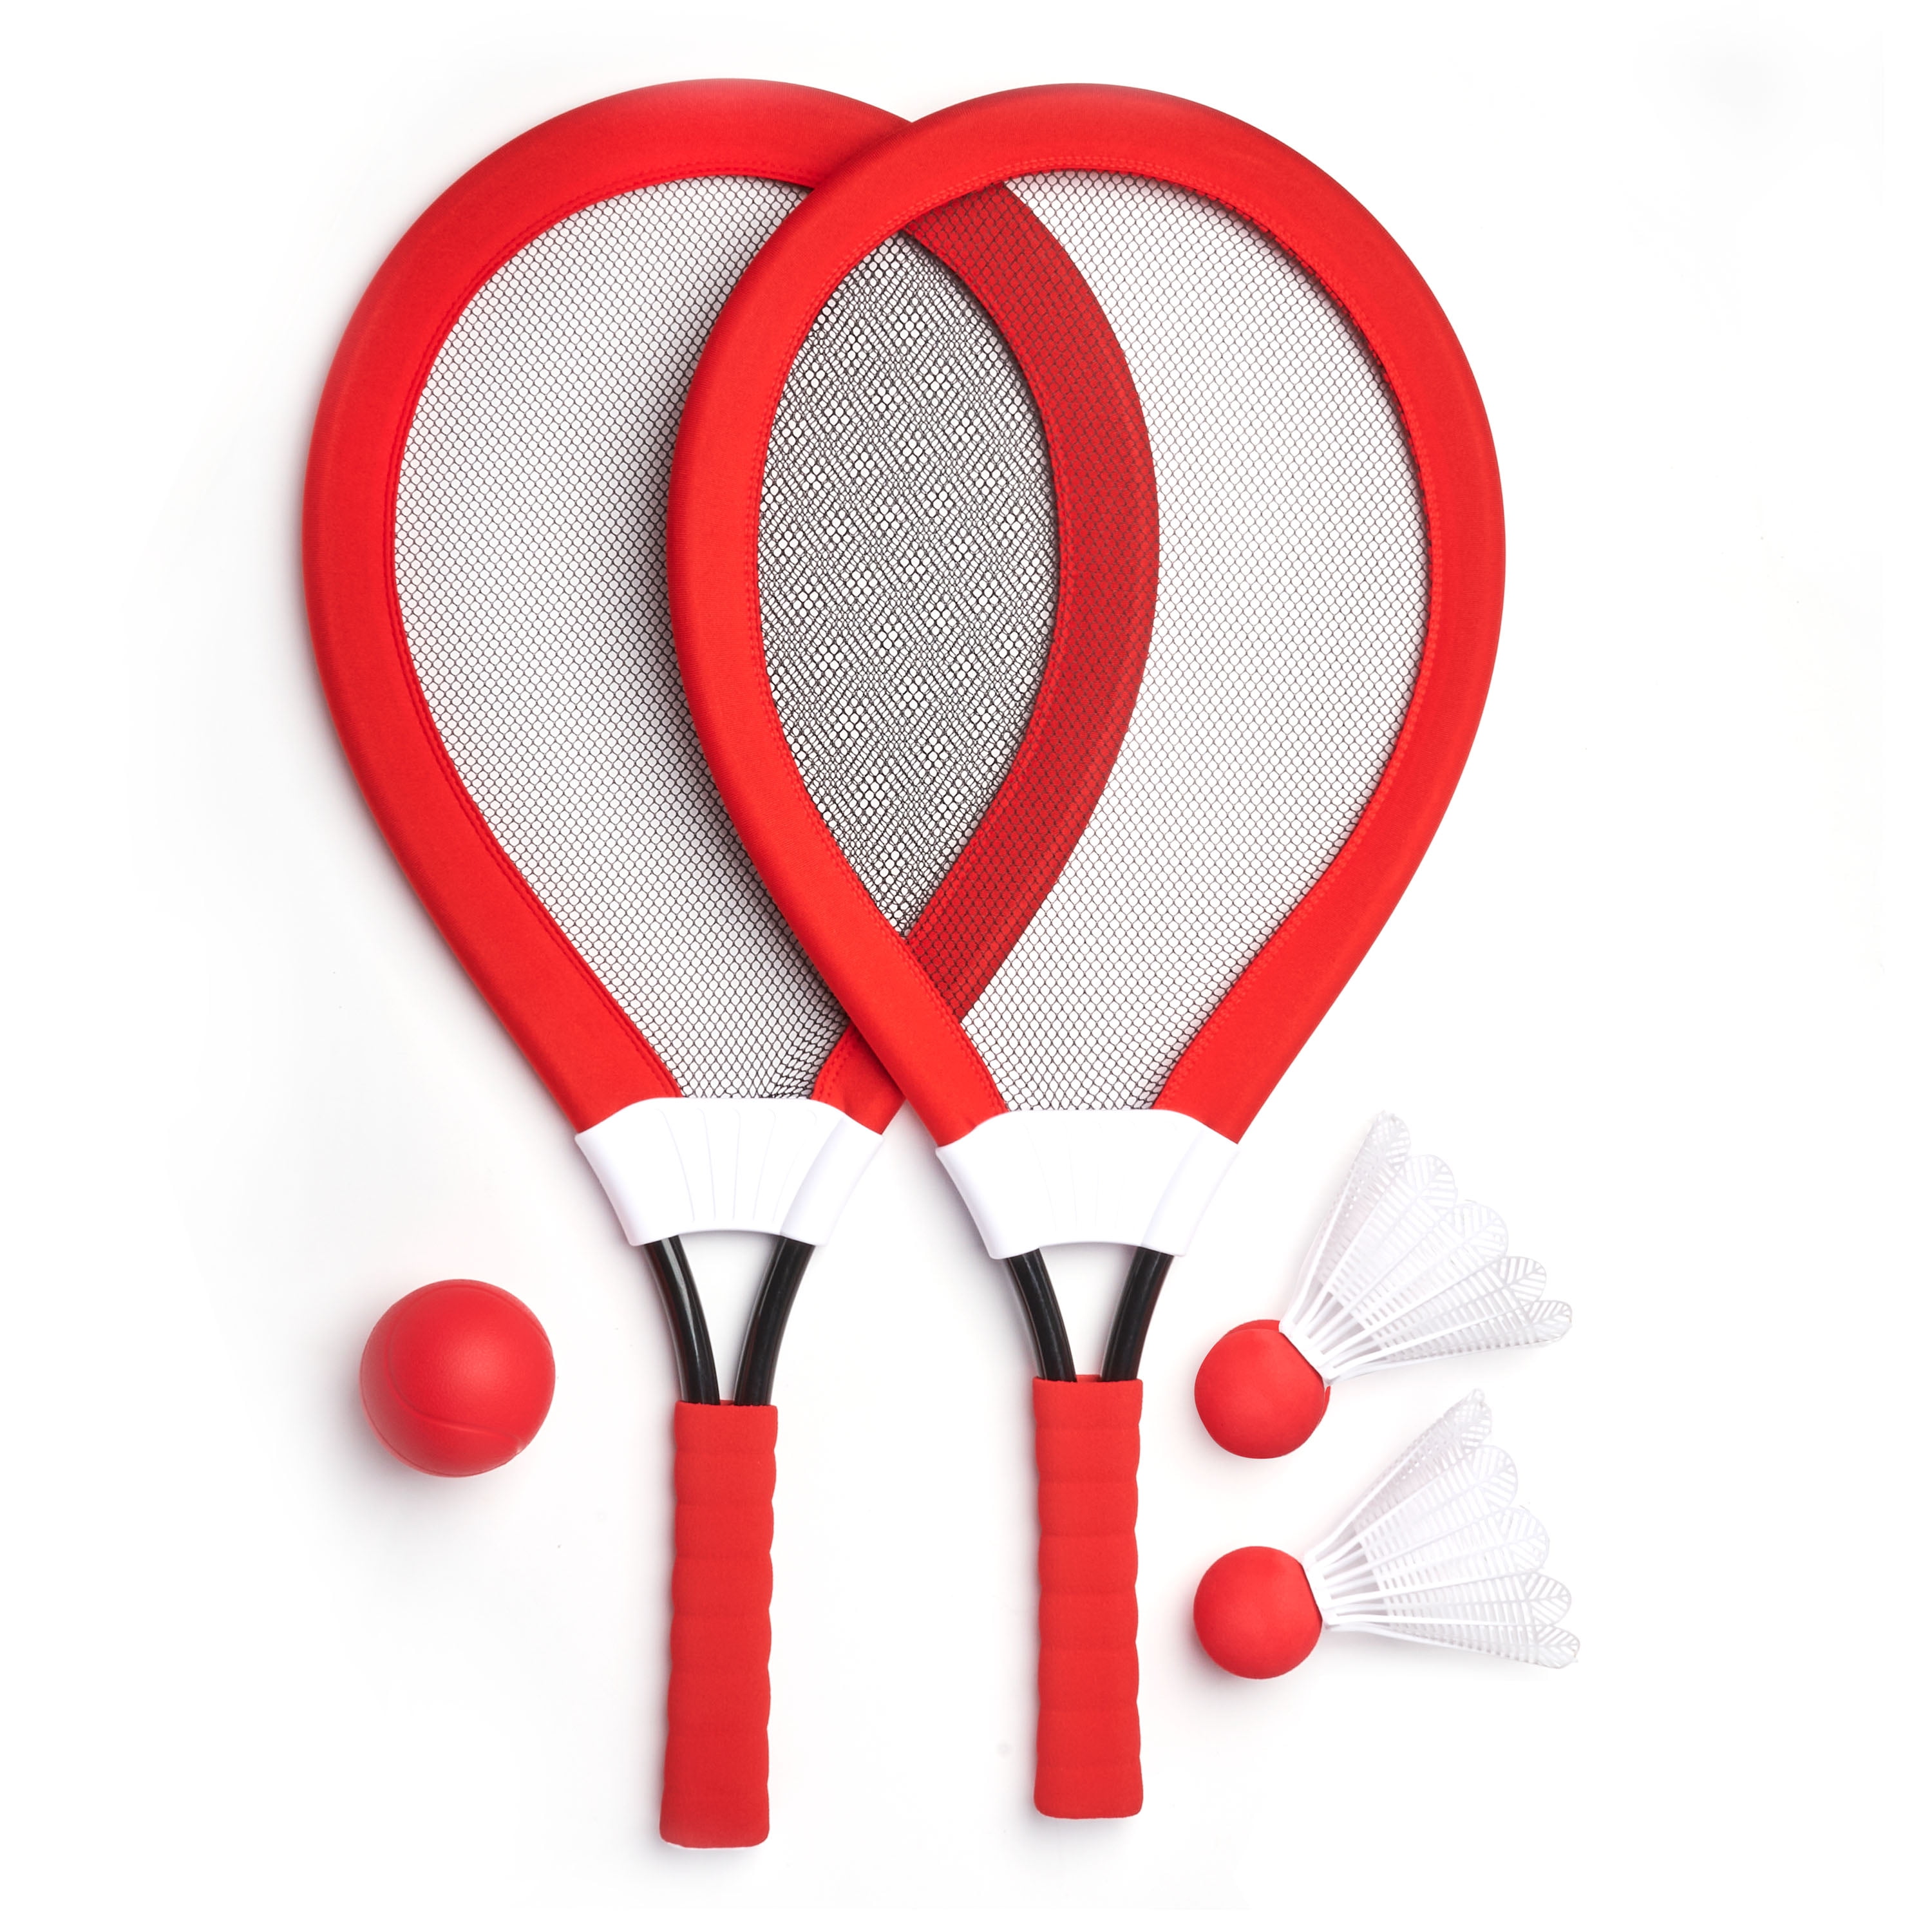 Cute Mini Badminton Tennis/Racket Toy Children Suits-Set